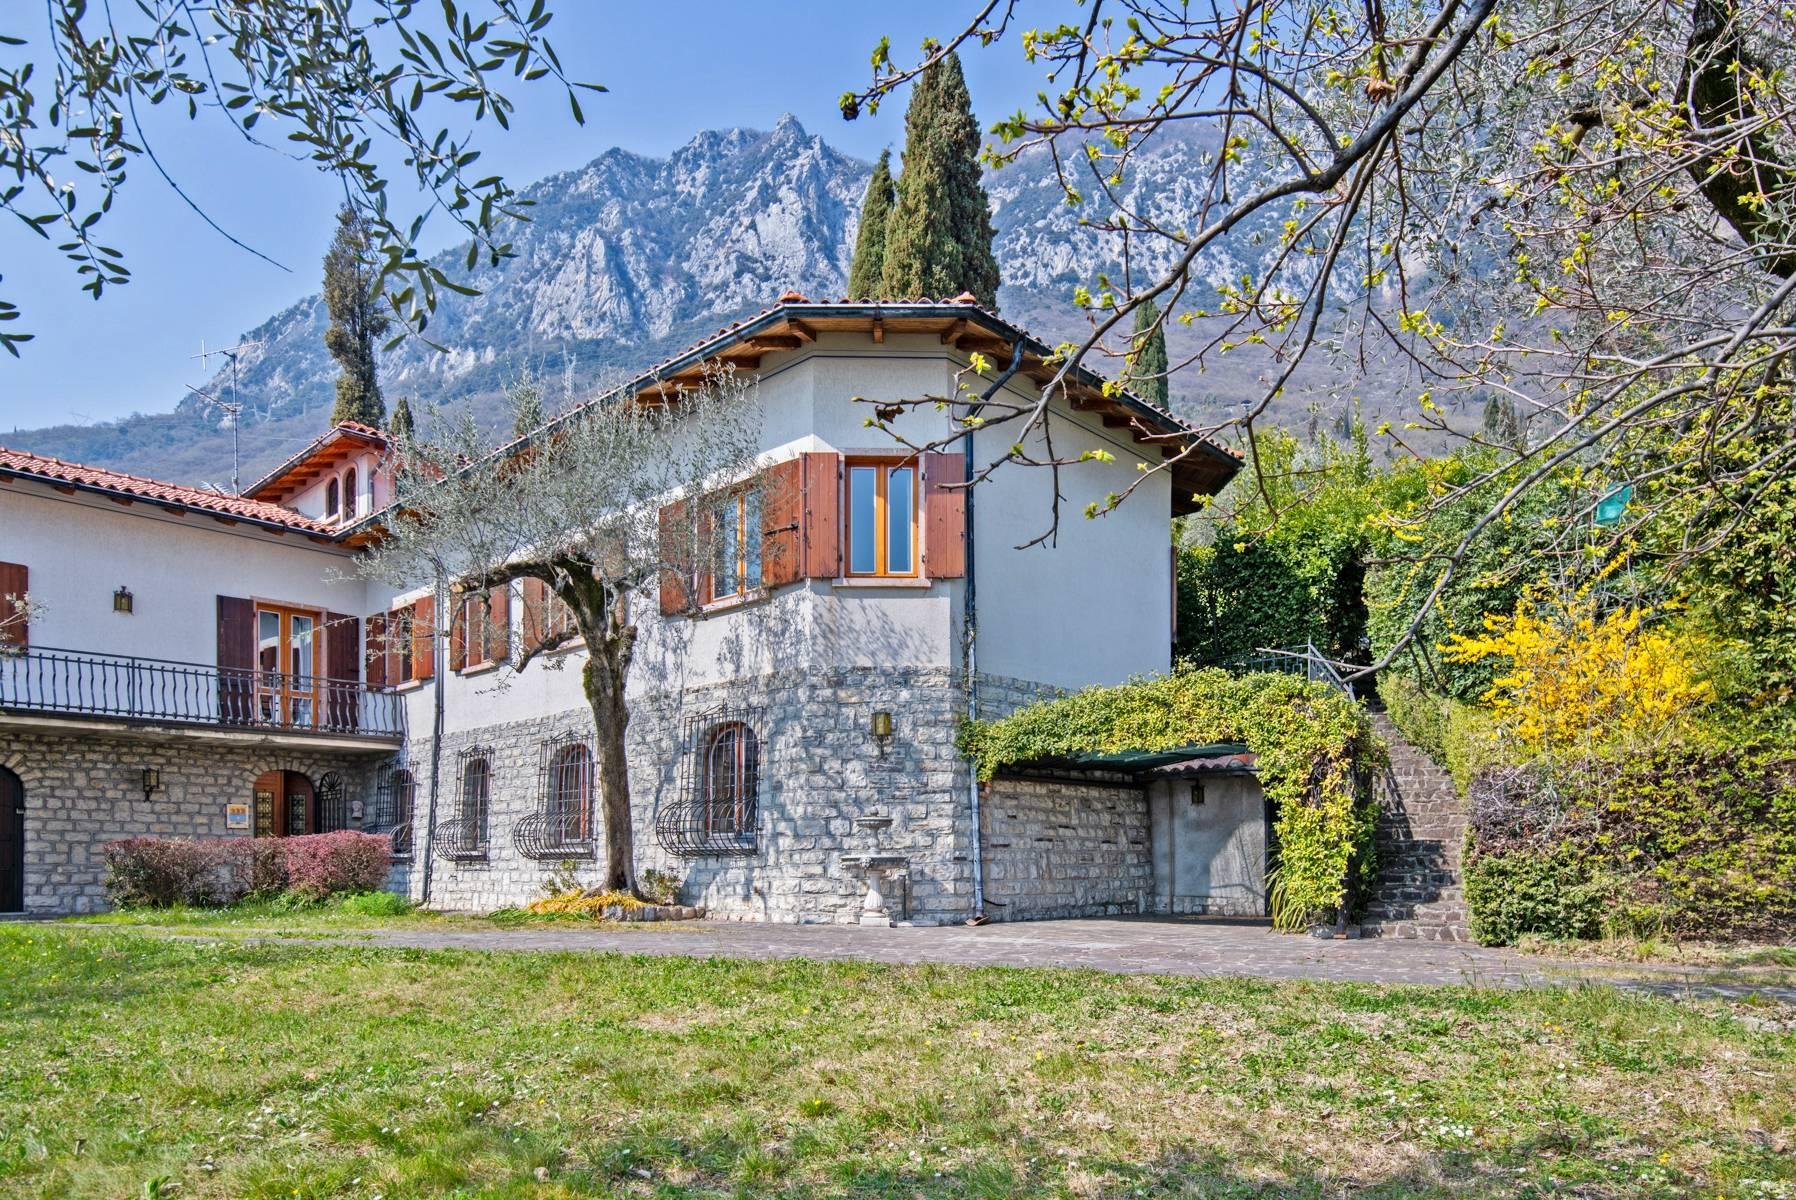 Villa in Gargnano inmitten der Olivenbäume vom Gardasee mit herrlichem Seeblick - 35